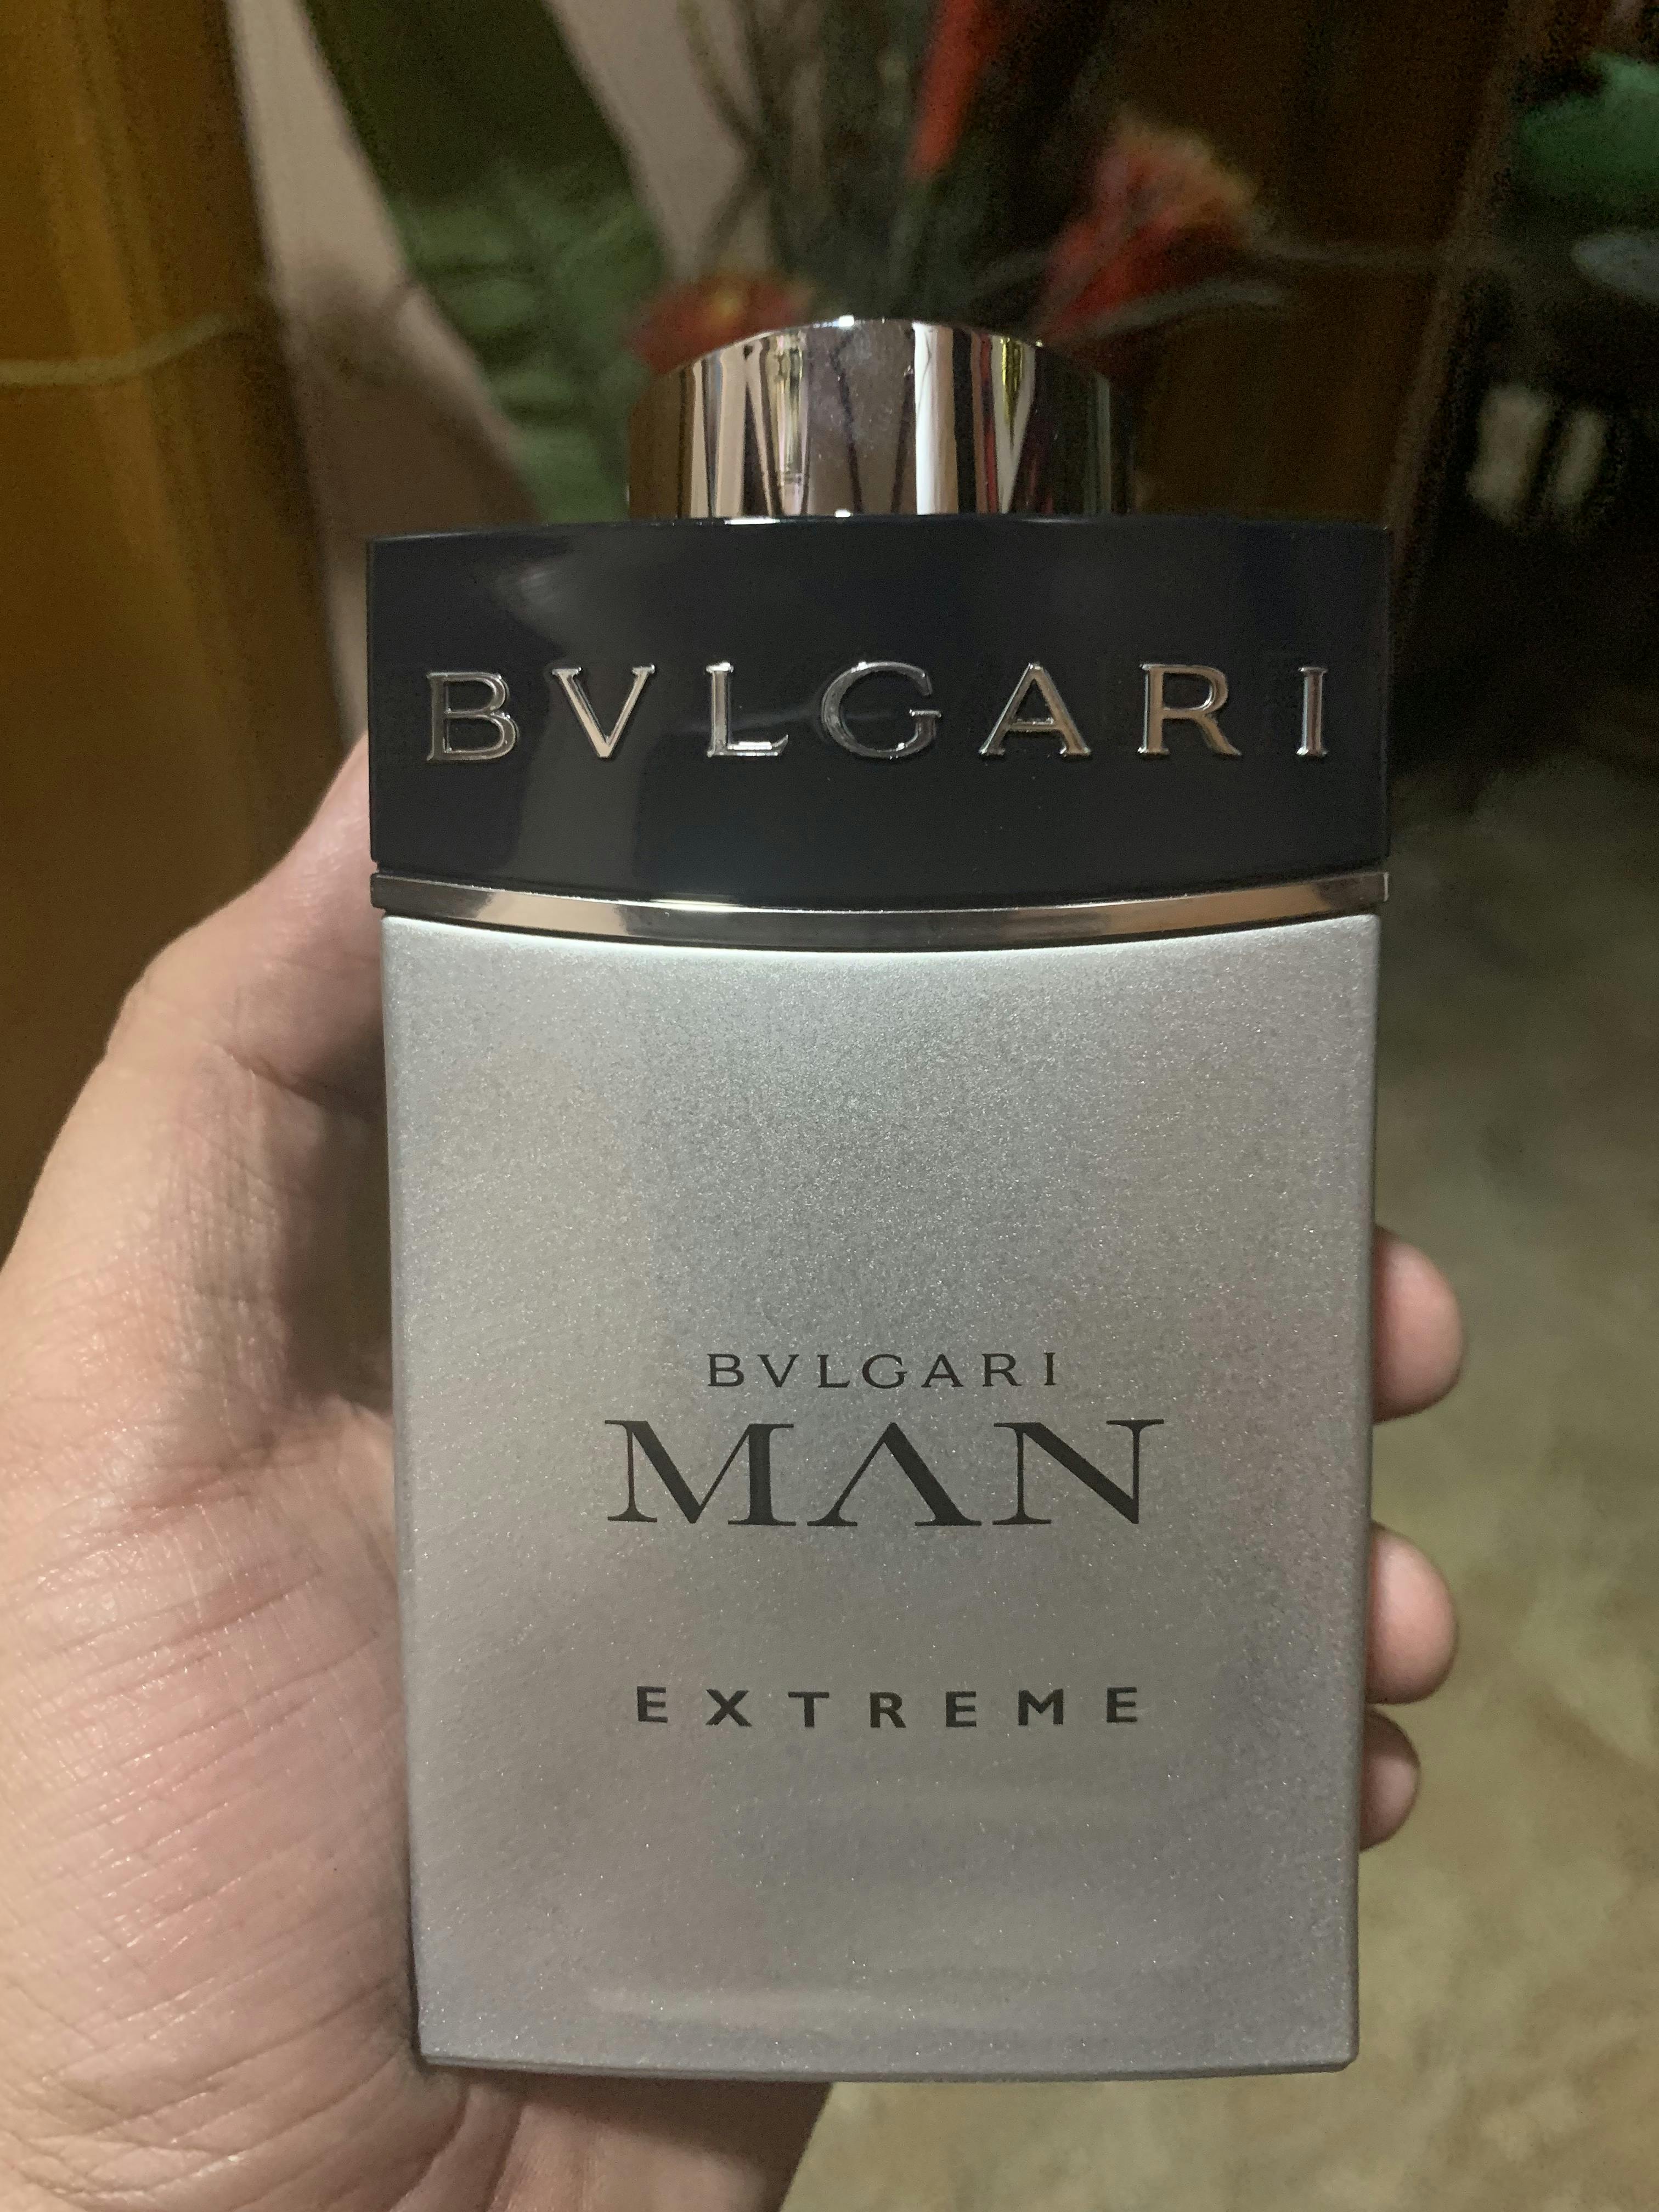 bvlgari man extreme 60ml price philippines